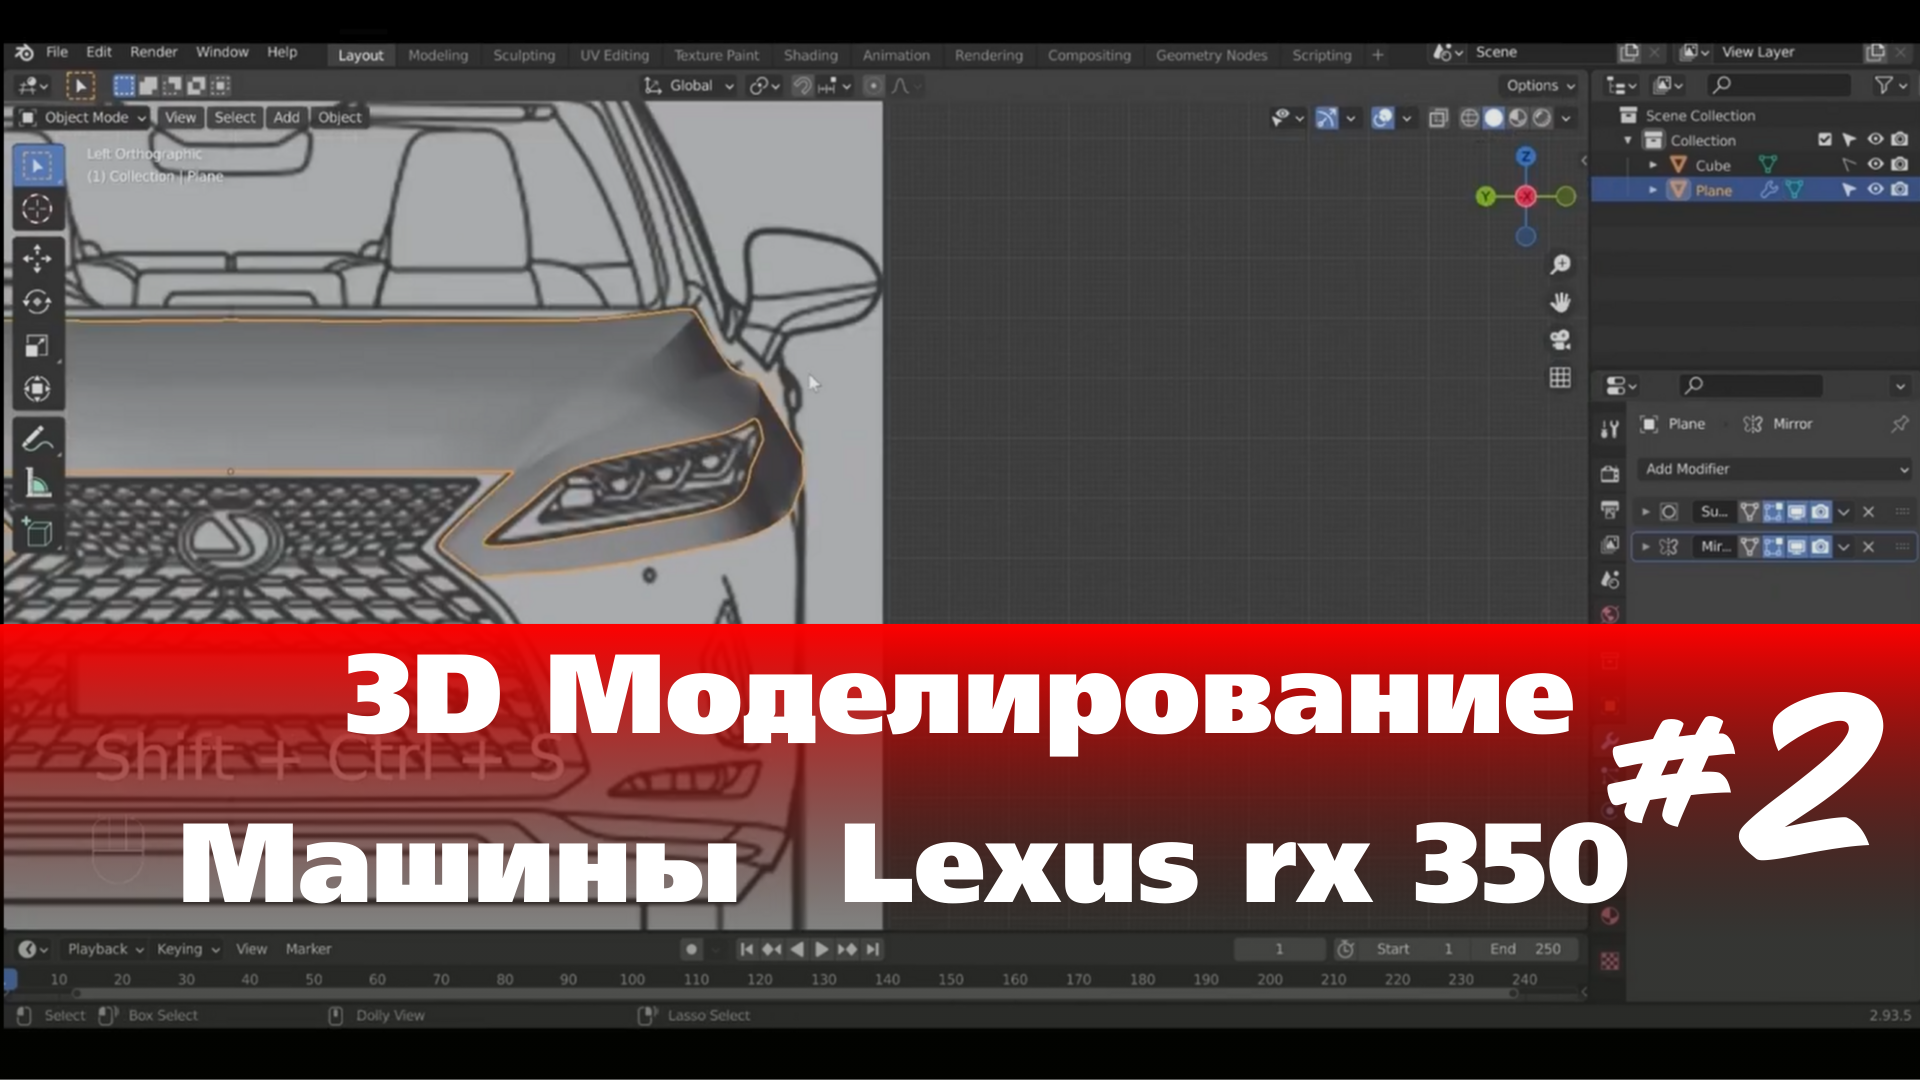 3D Моделирование Машины в Blender  - Lexus rx 350  часть 2